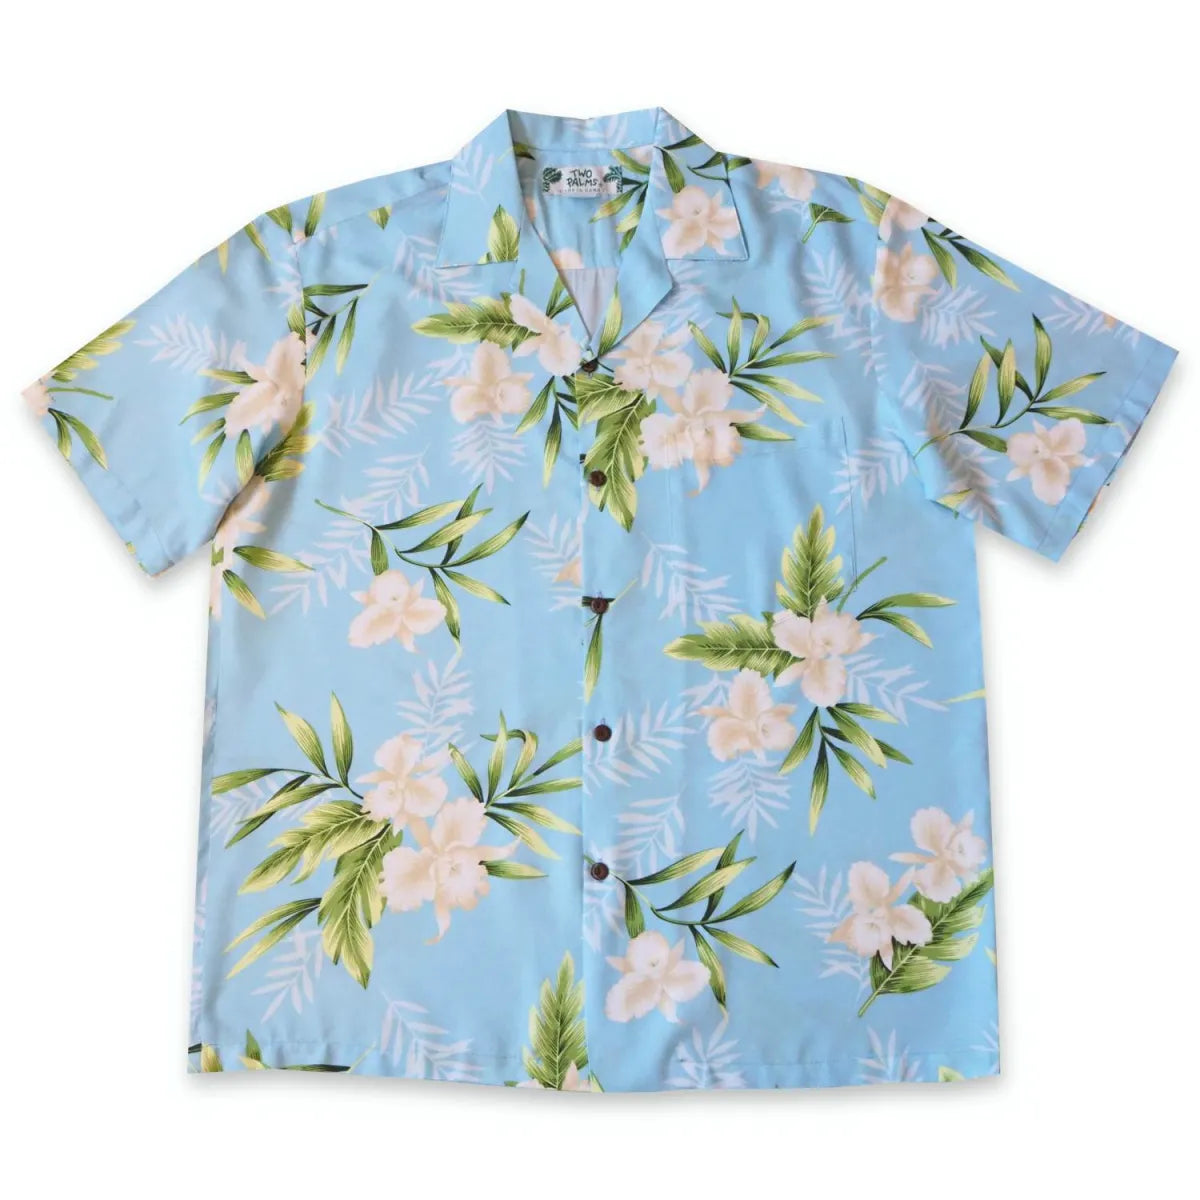 Midnight baby blue hawaiian rayon shirt